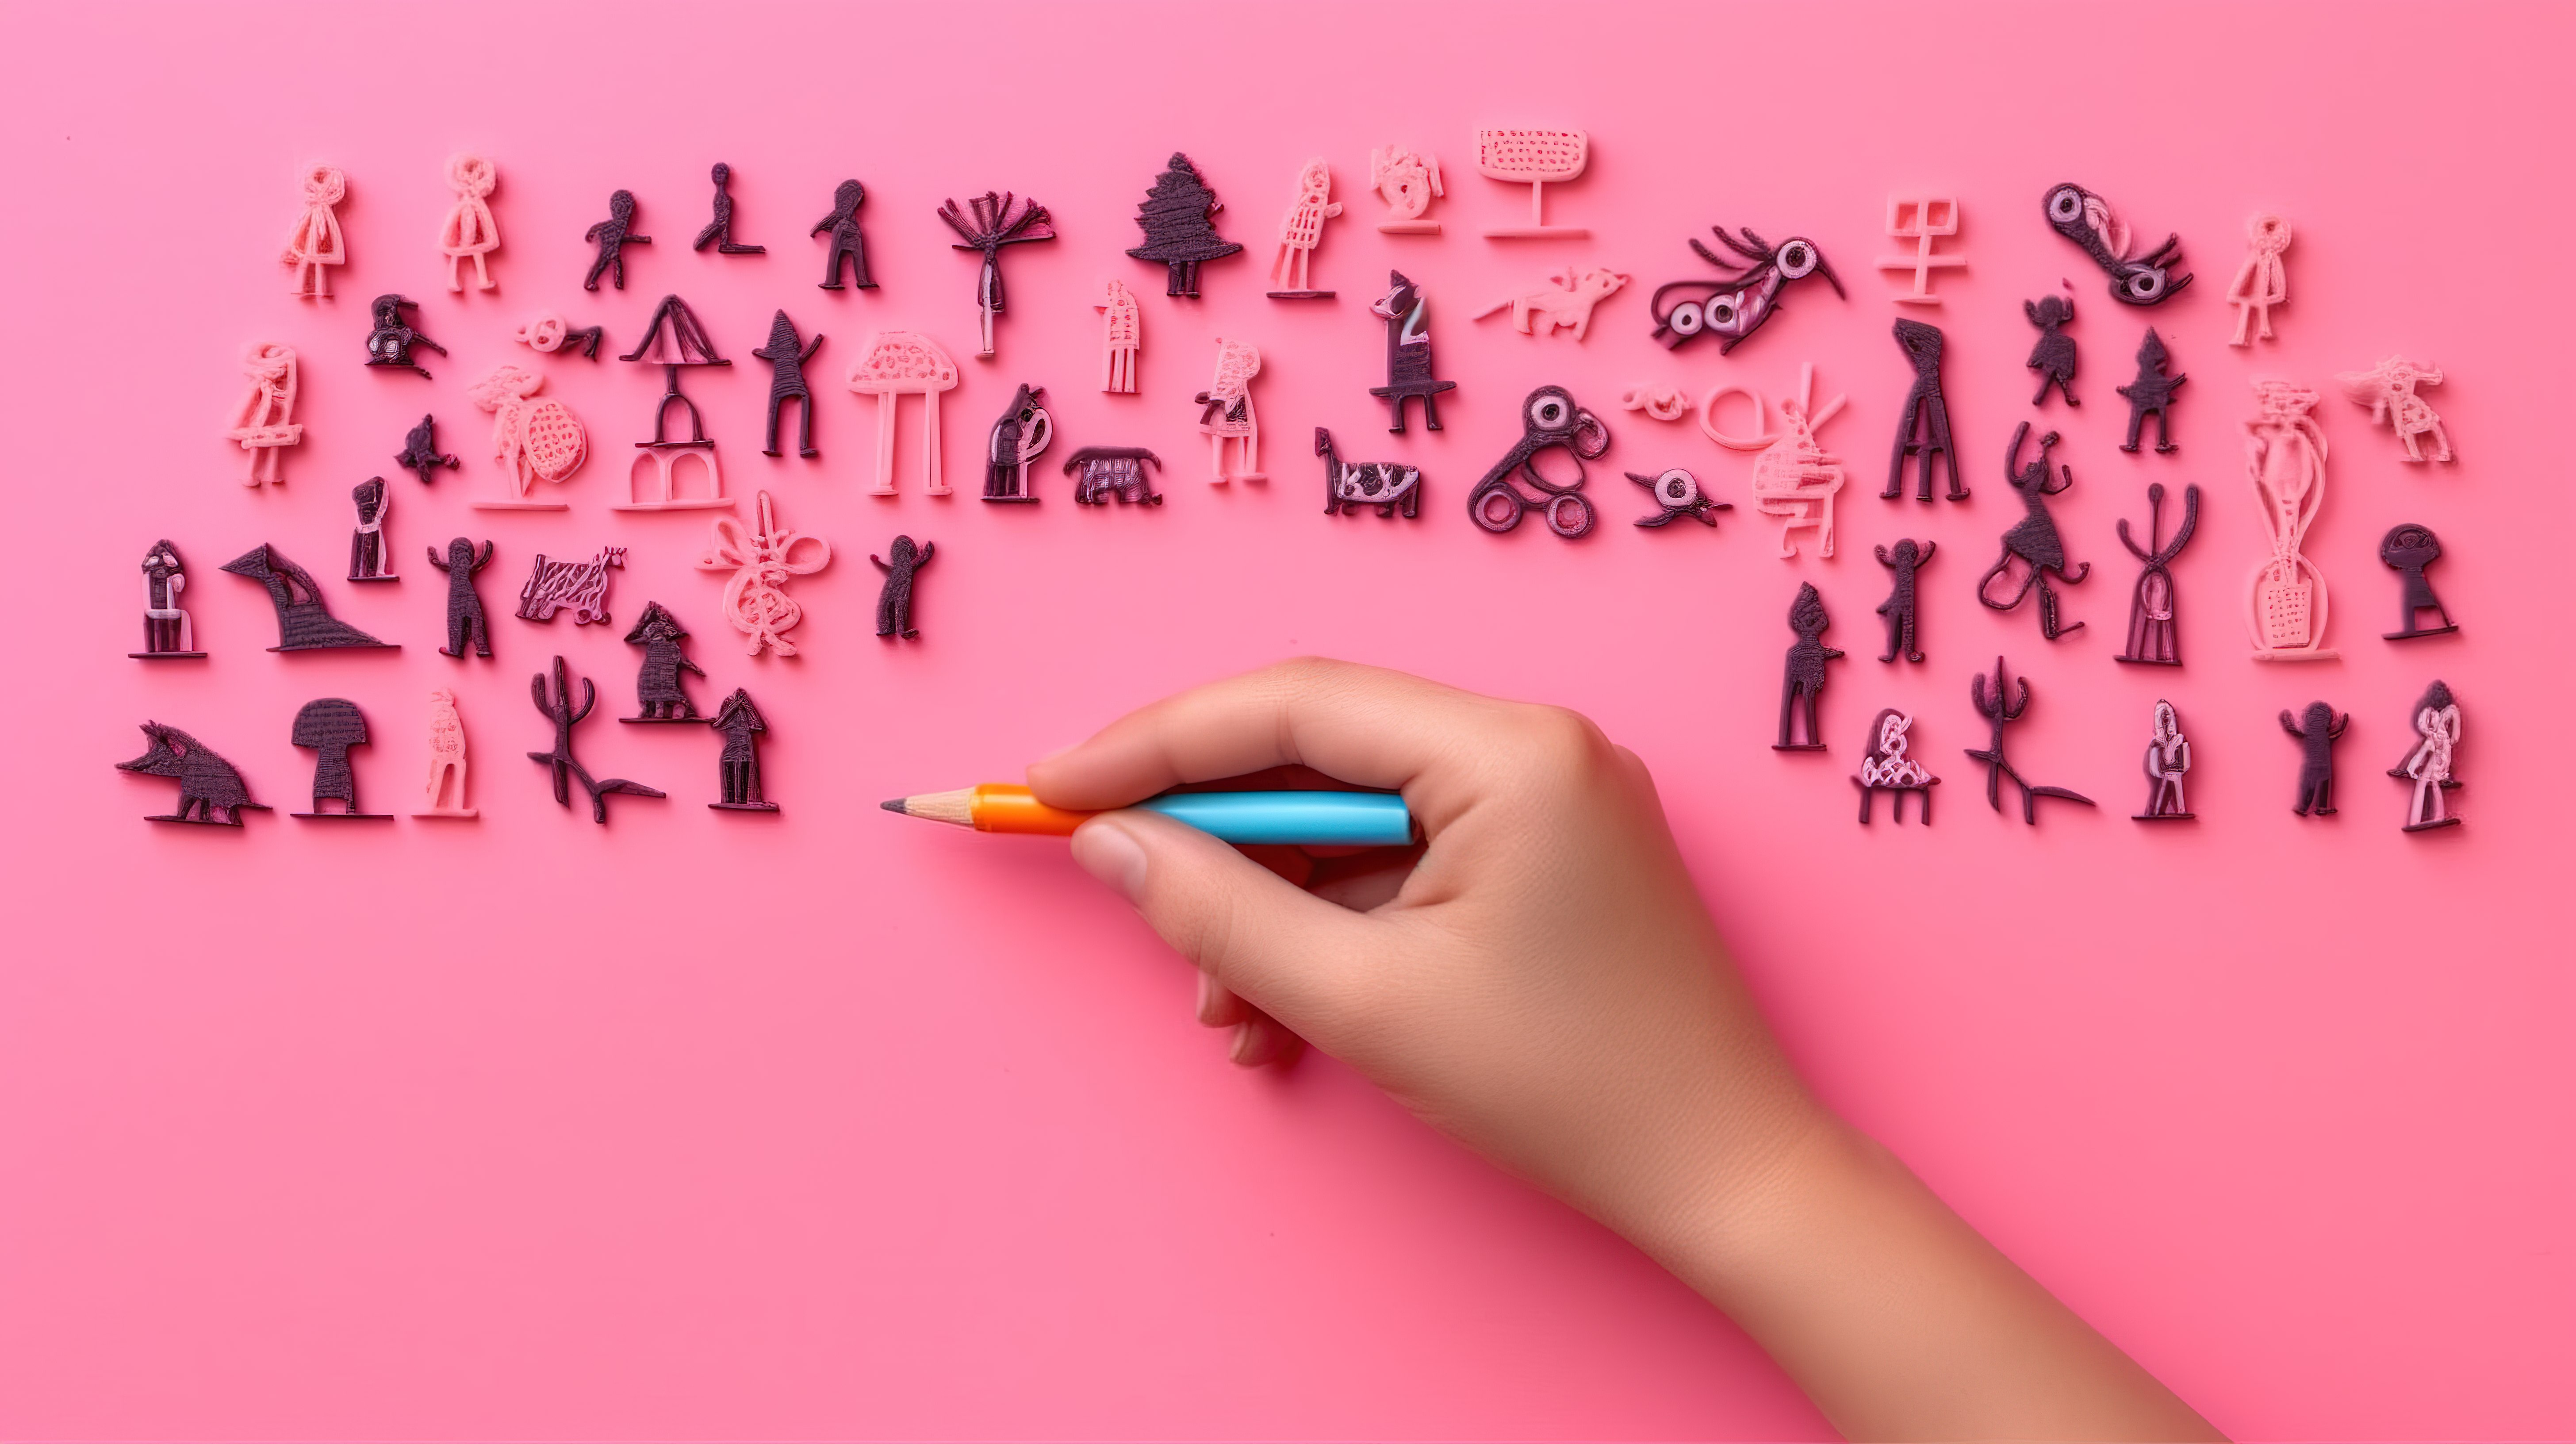 孩子们用笔在粉红色背景上制作 3D 人物的顶视图图片